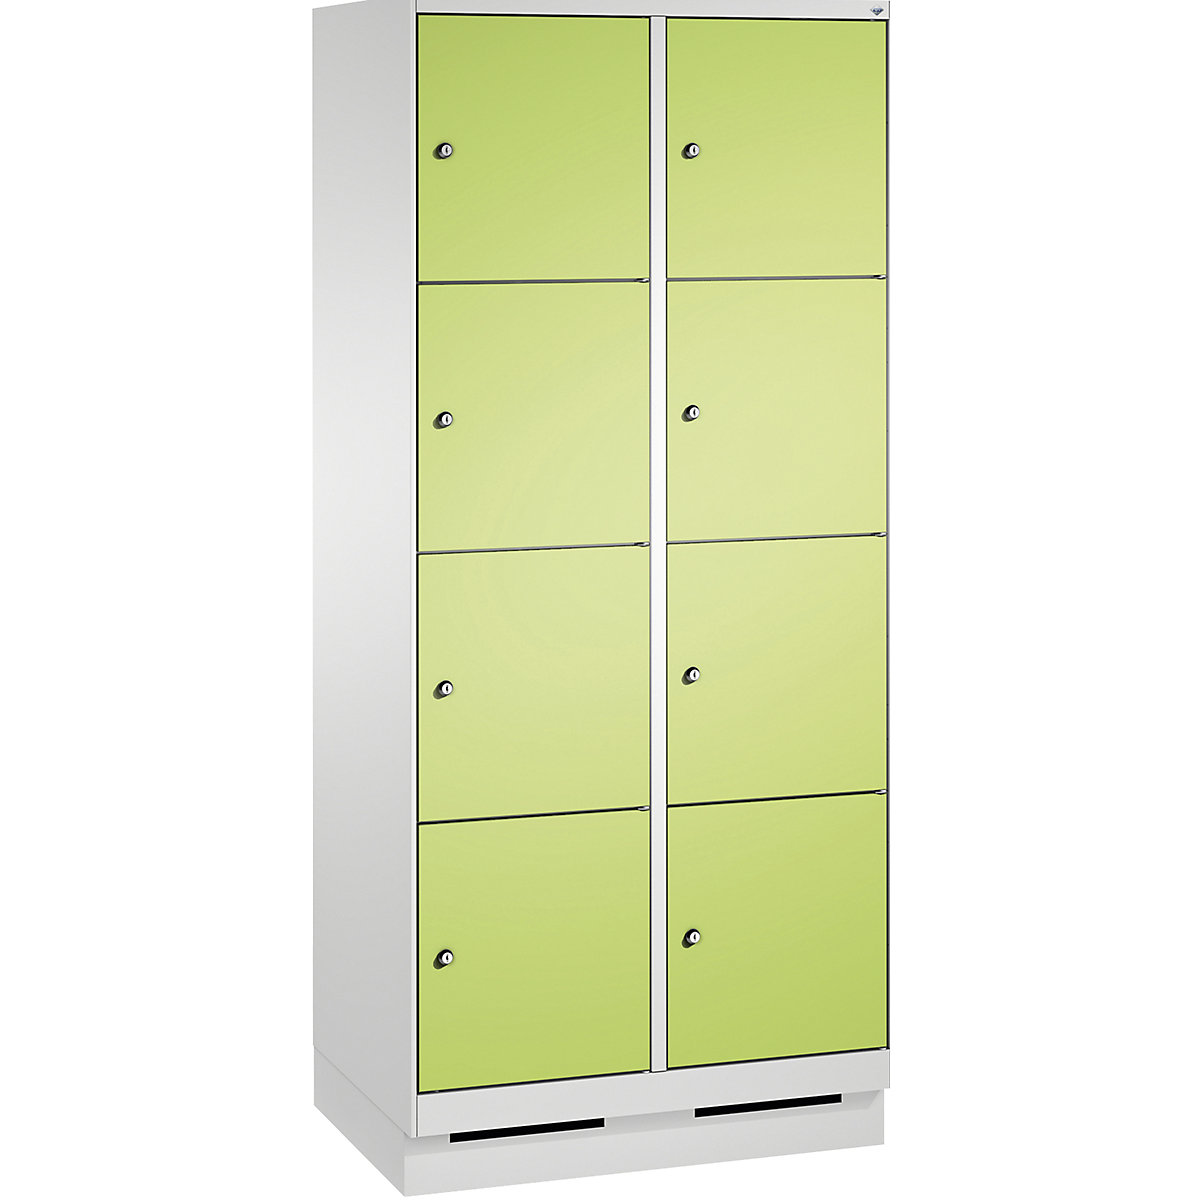 Armoire à casiers sur socle EVOLO – C+P, 2 compartiments, 4 casiers chacun, largeur compartiments 400 mm, gris clair / vert-13